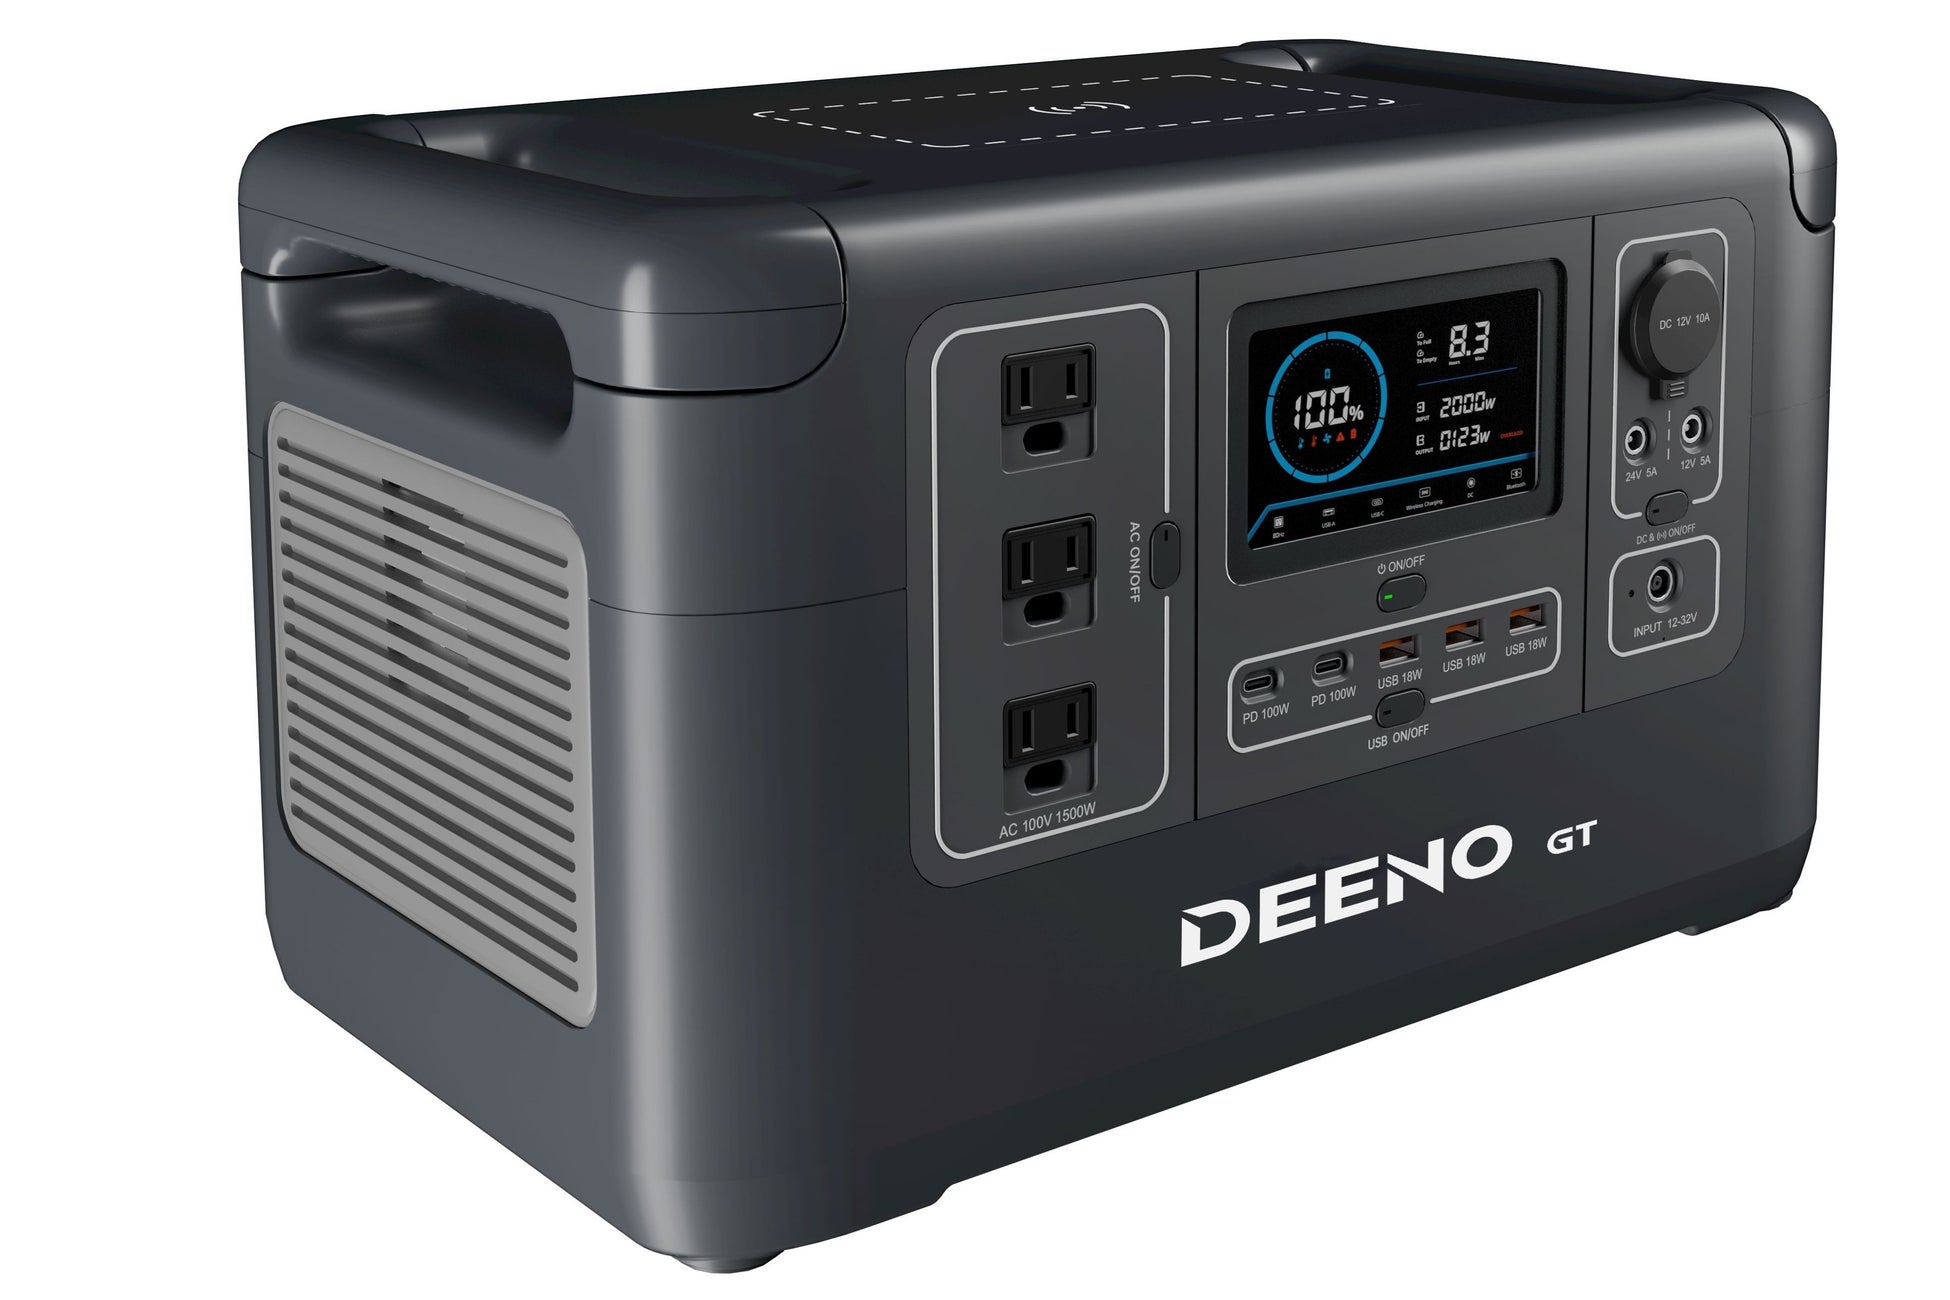 エム・エス・シー、リン酸鉄リチウムイオン電池搭載のポータブル電源「DEENO X1500」を全国の家電量販店で販売開始のサブ画像15